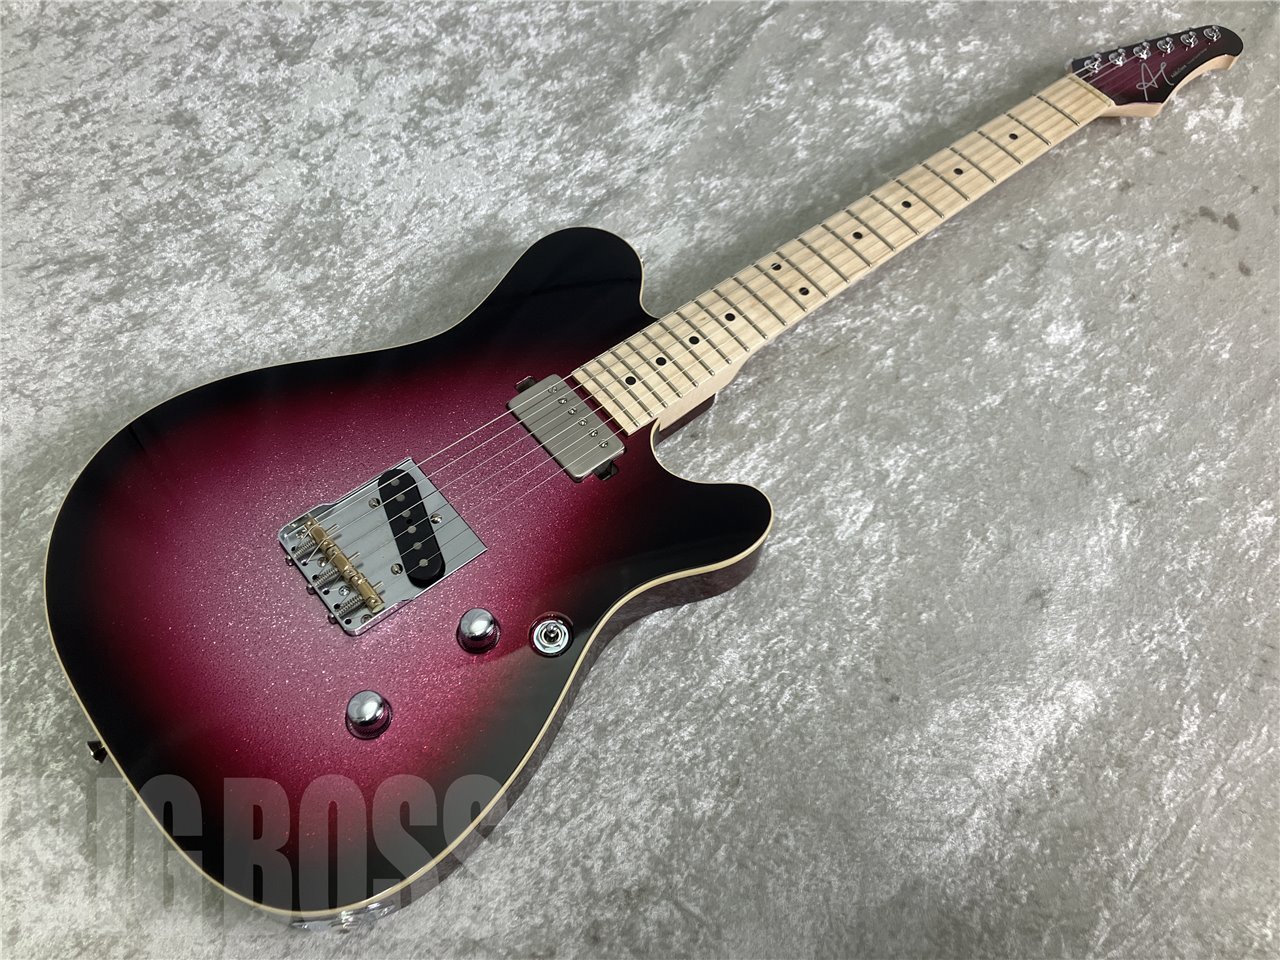 【即納可能】Addictone Custom Guitars(アディクトーンカスタムギターズ) ARENA ECHO TL bridge(Crimson sparkle burst) お茶の水駅前店(東京)